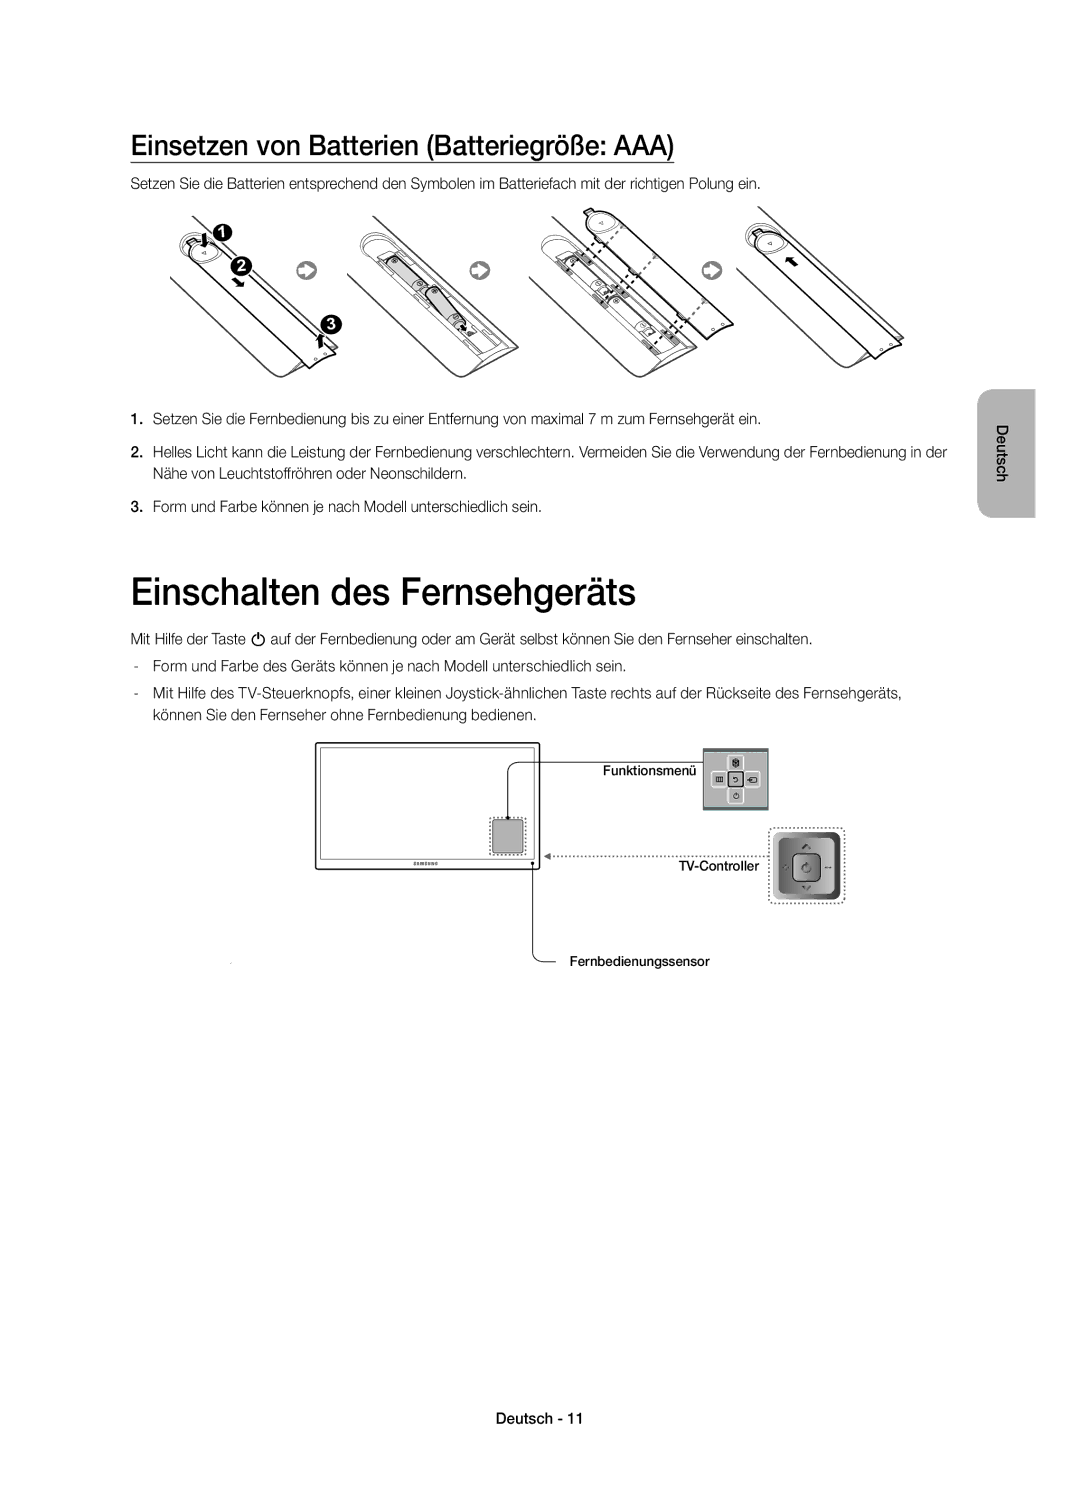 Samsung UE55HU7100SXXC, UE55HU7100SXZG manual Einschalten des Fernsehgeräts, Einsetzen von Batterien Batteriegröße AAA 